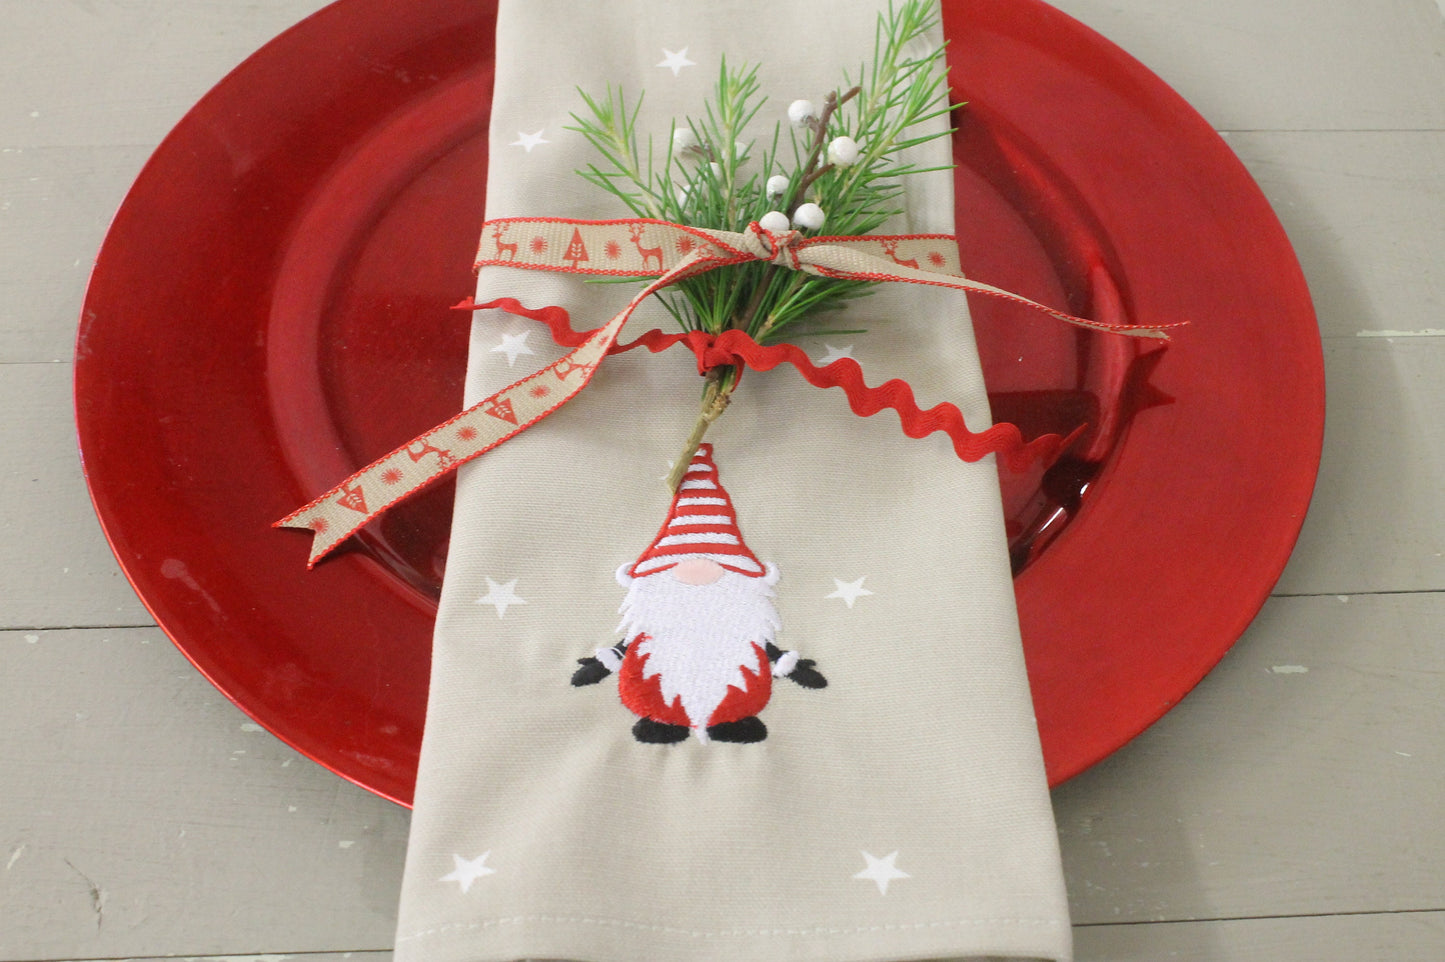 Christmas Napkins - Festive table- Christmas Gnome Napkins -Handmade Christmas Gnome Napkins - Taupe Star Red Gnome Fabric Napkins